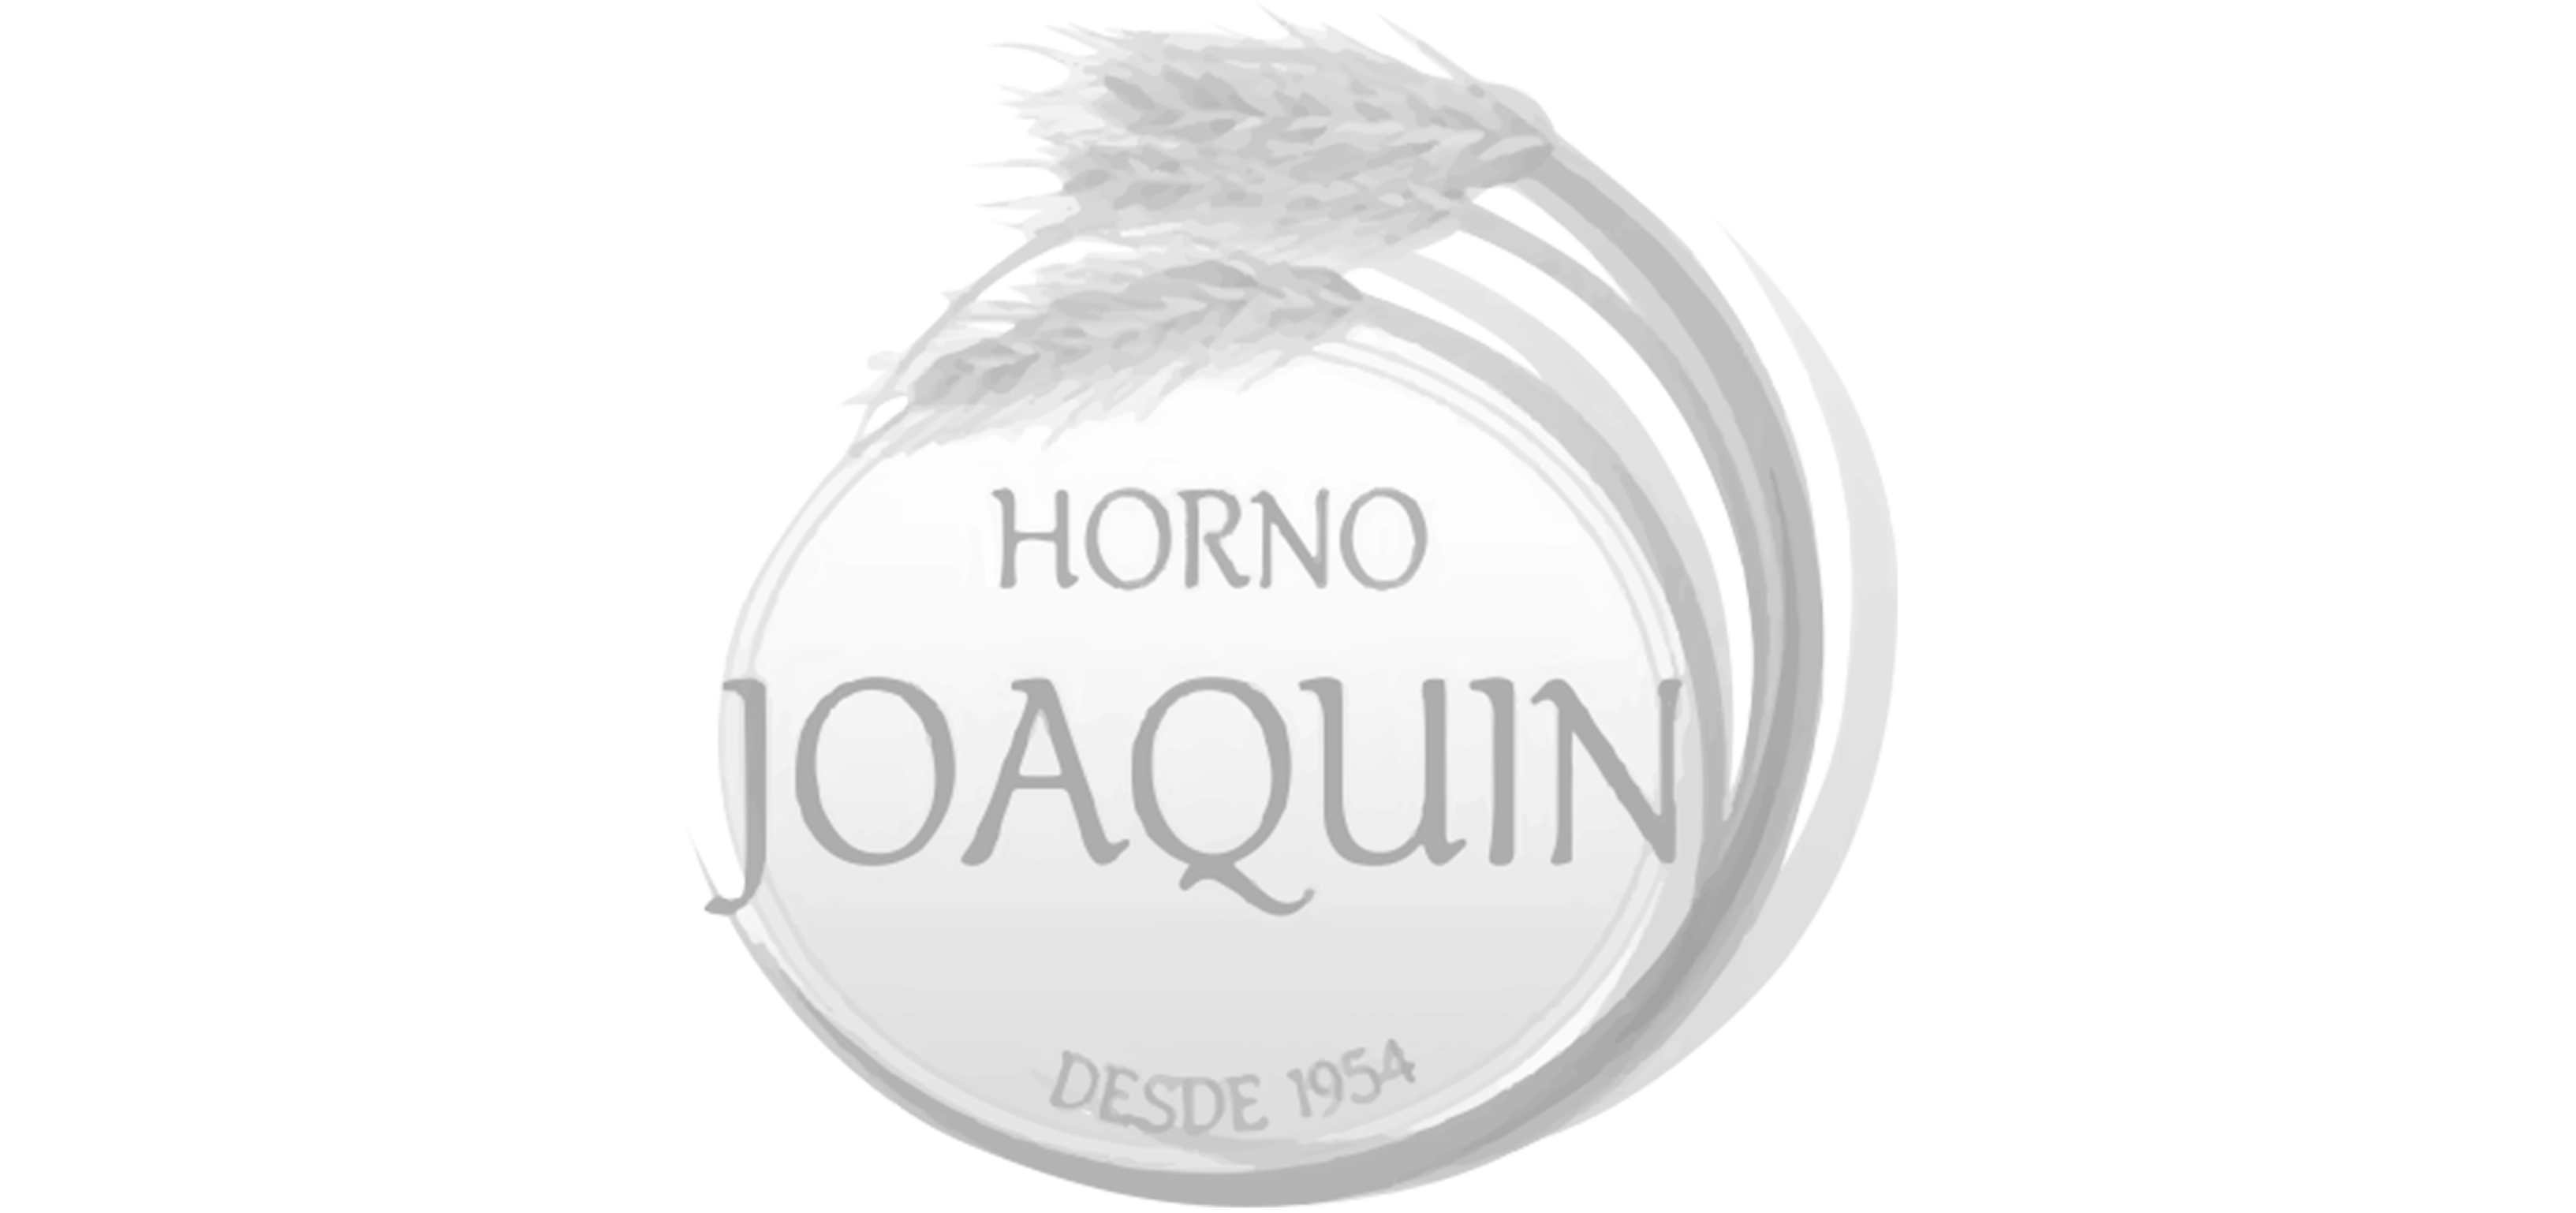 Horno Joaquin